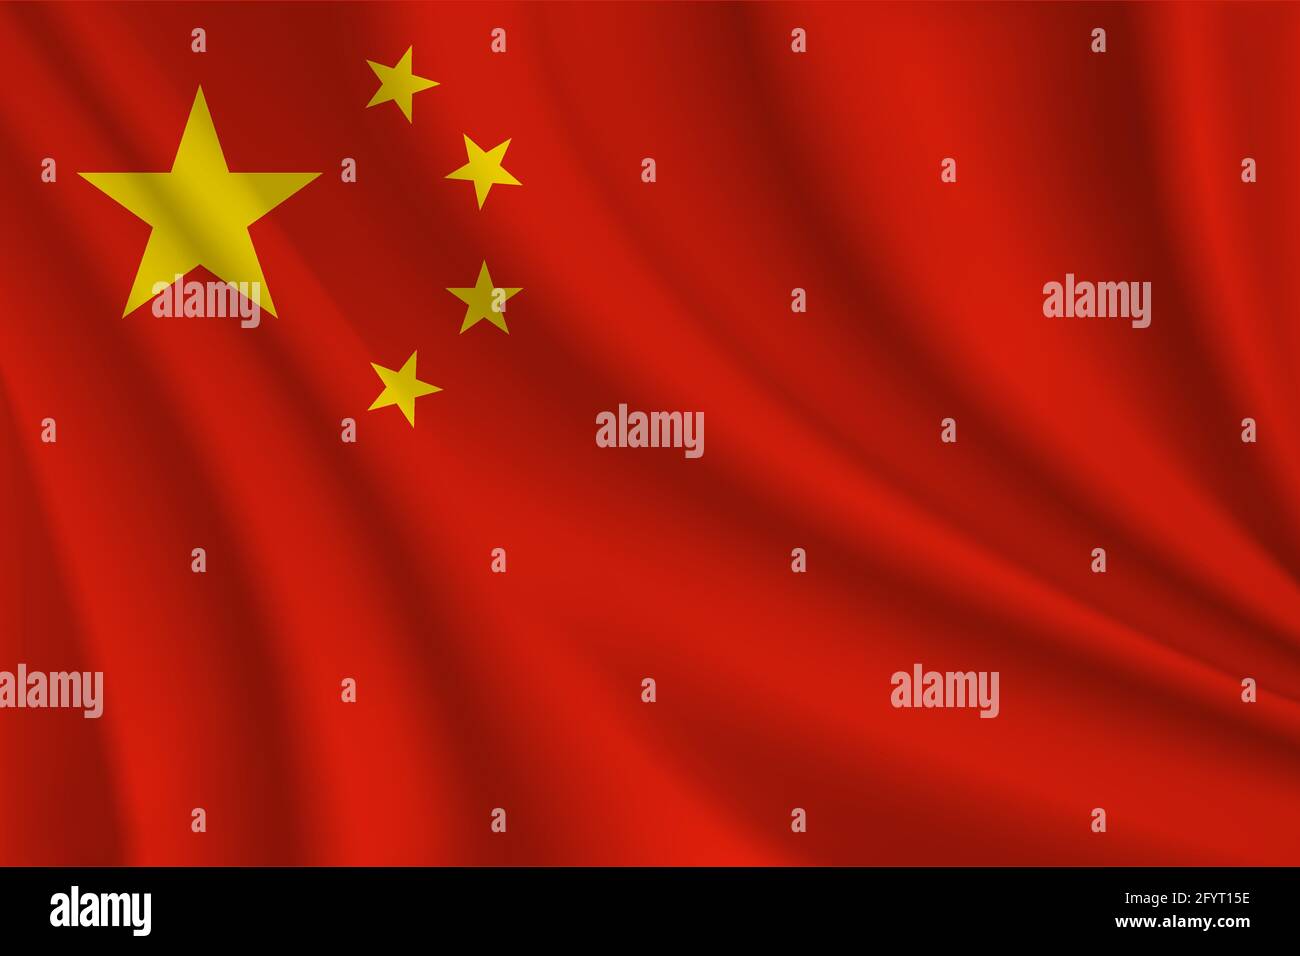 Vecteur de drapeau ondulé réaliste chinois Illustration de Vecteur